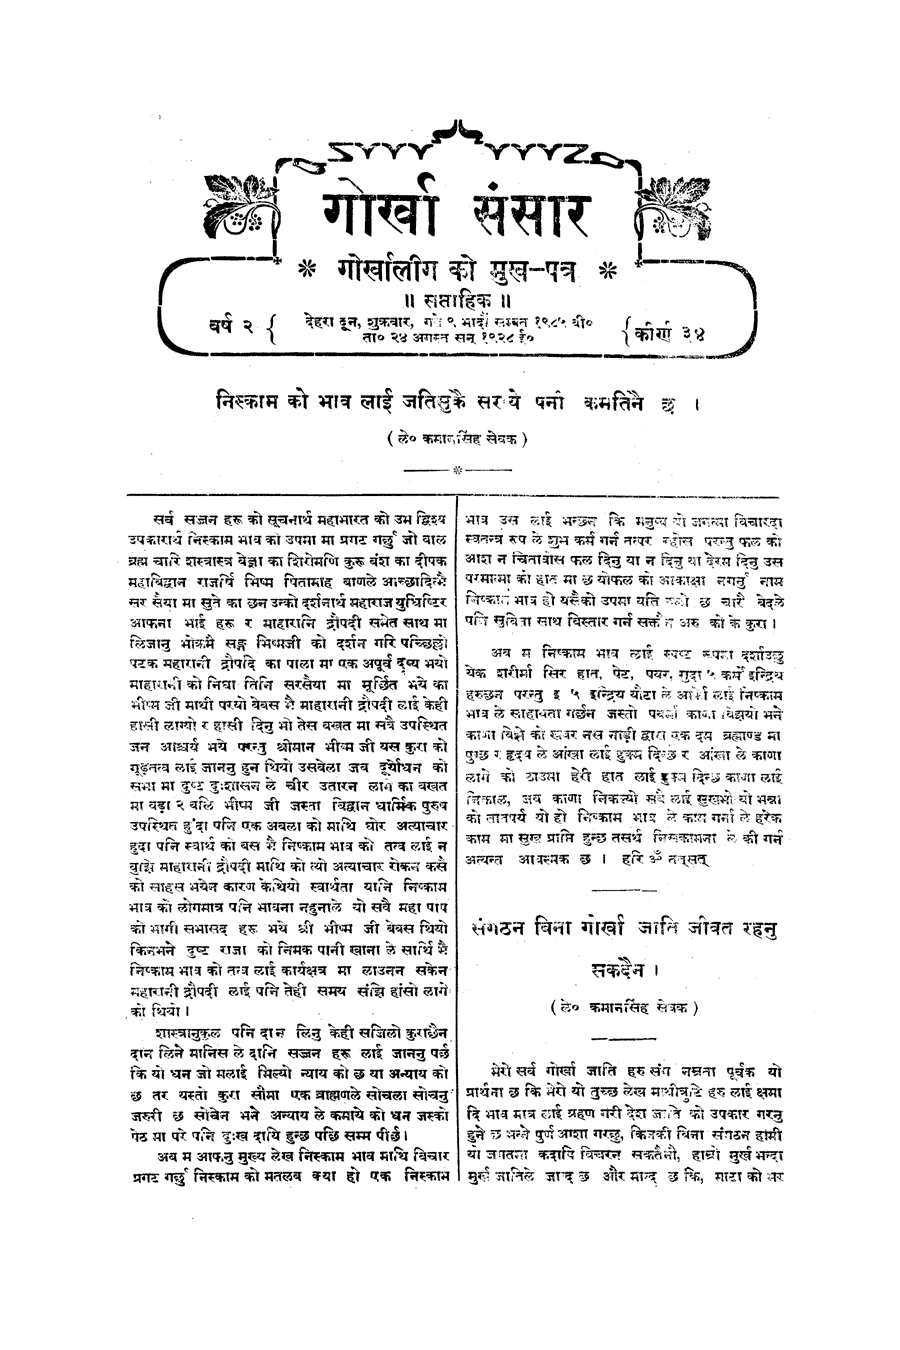 Gorkha Sansar, 24 Aug 1928, page 3